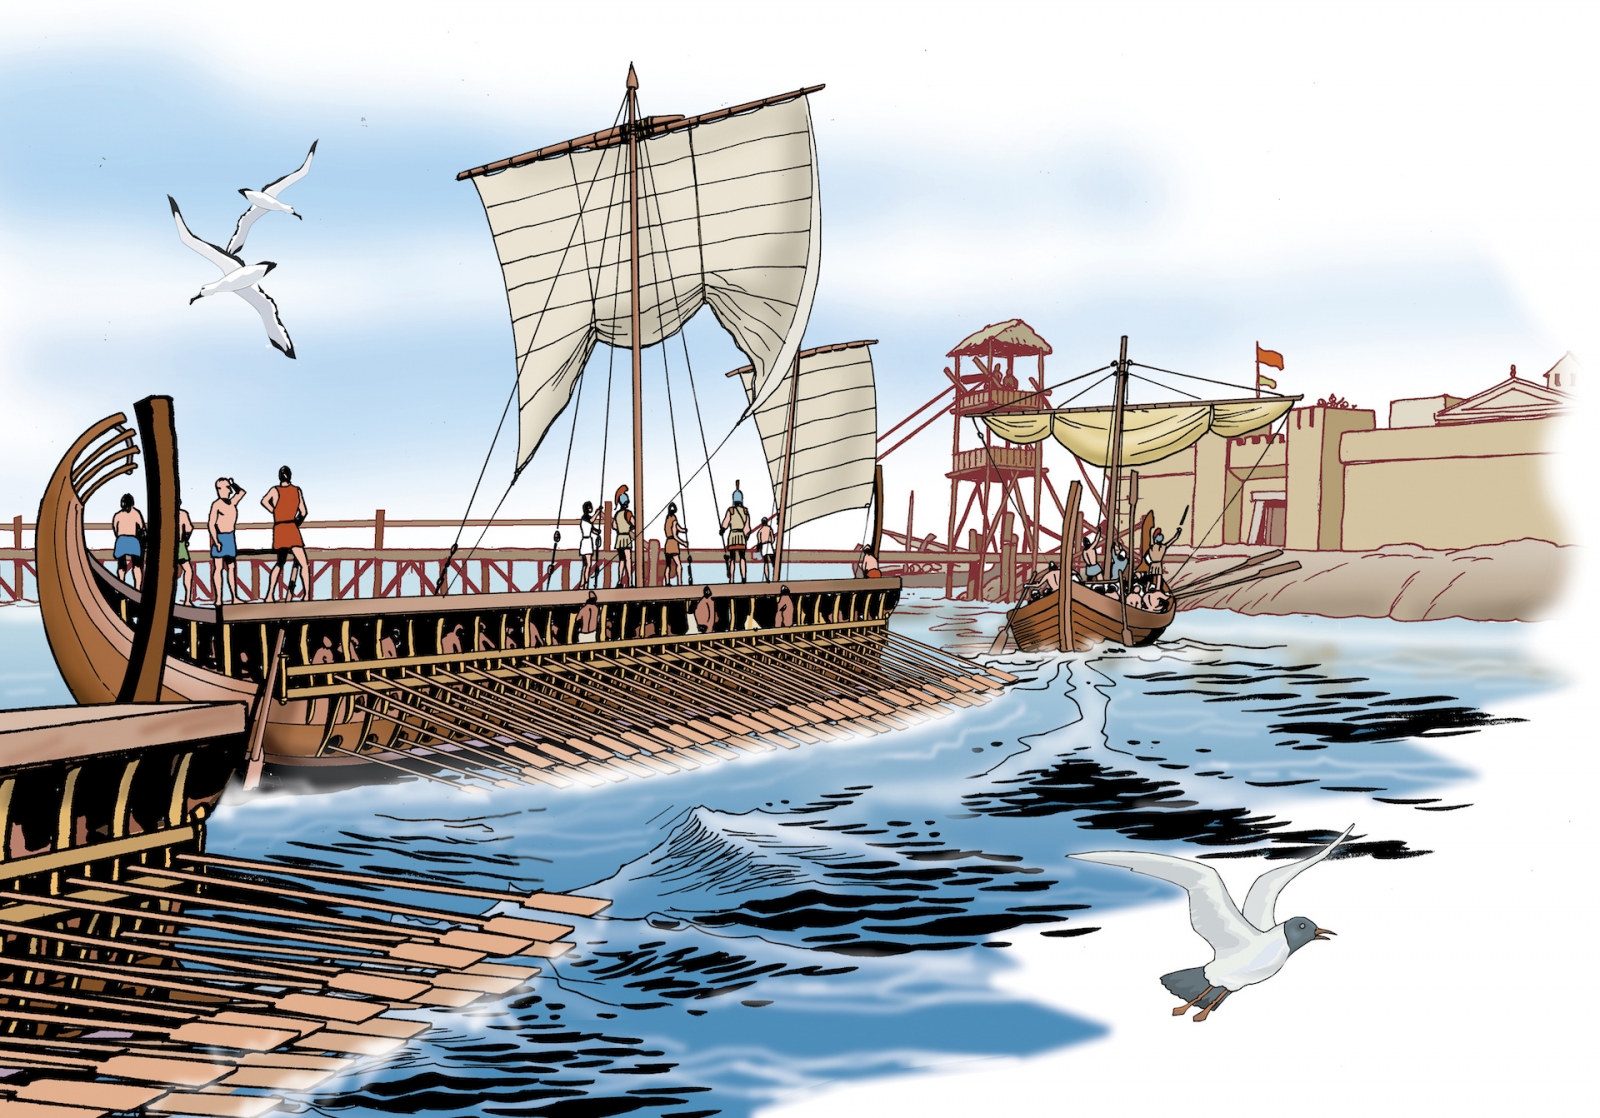 Grèce antique - Les navires de guerre grecs arrivent au port